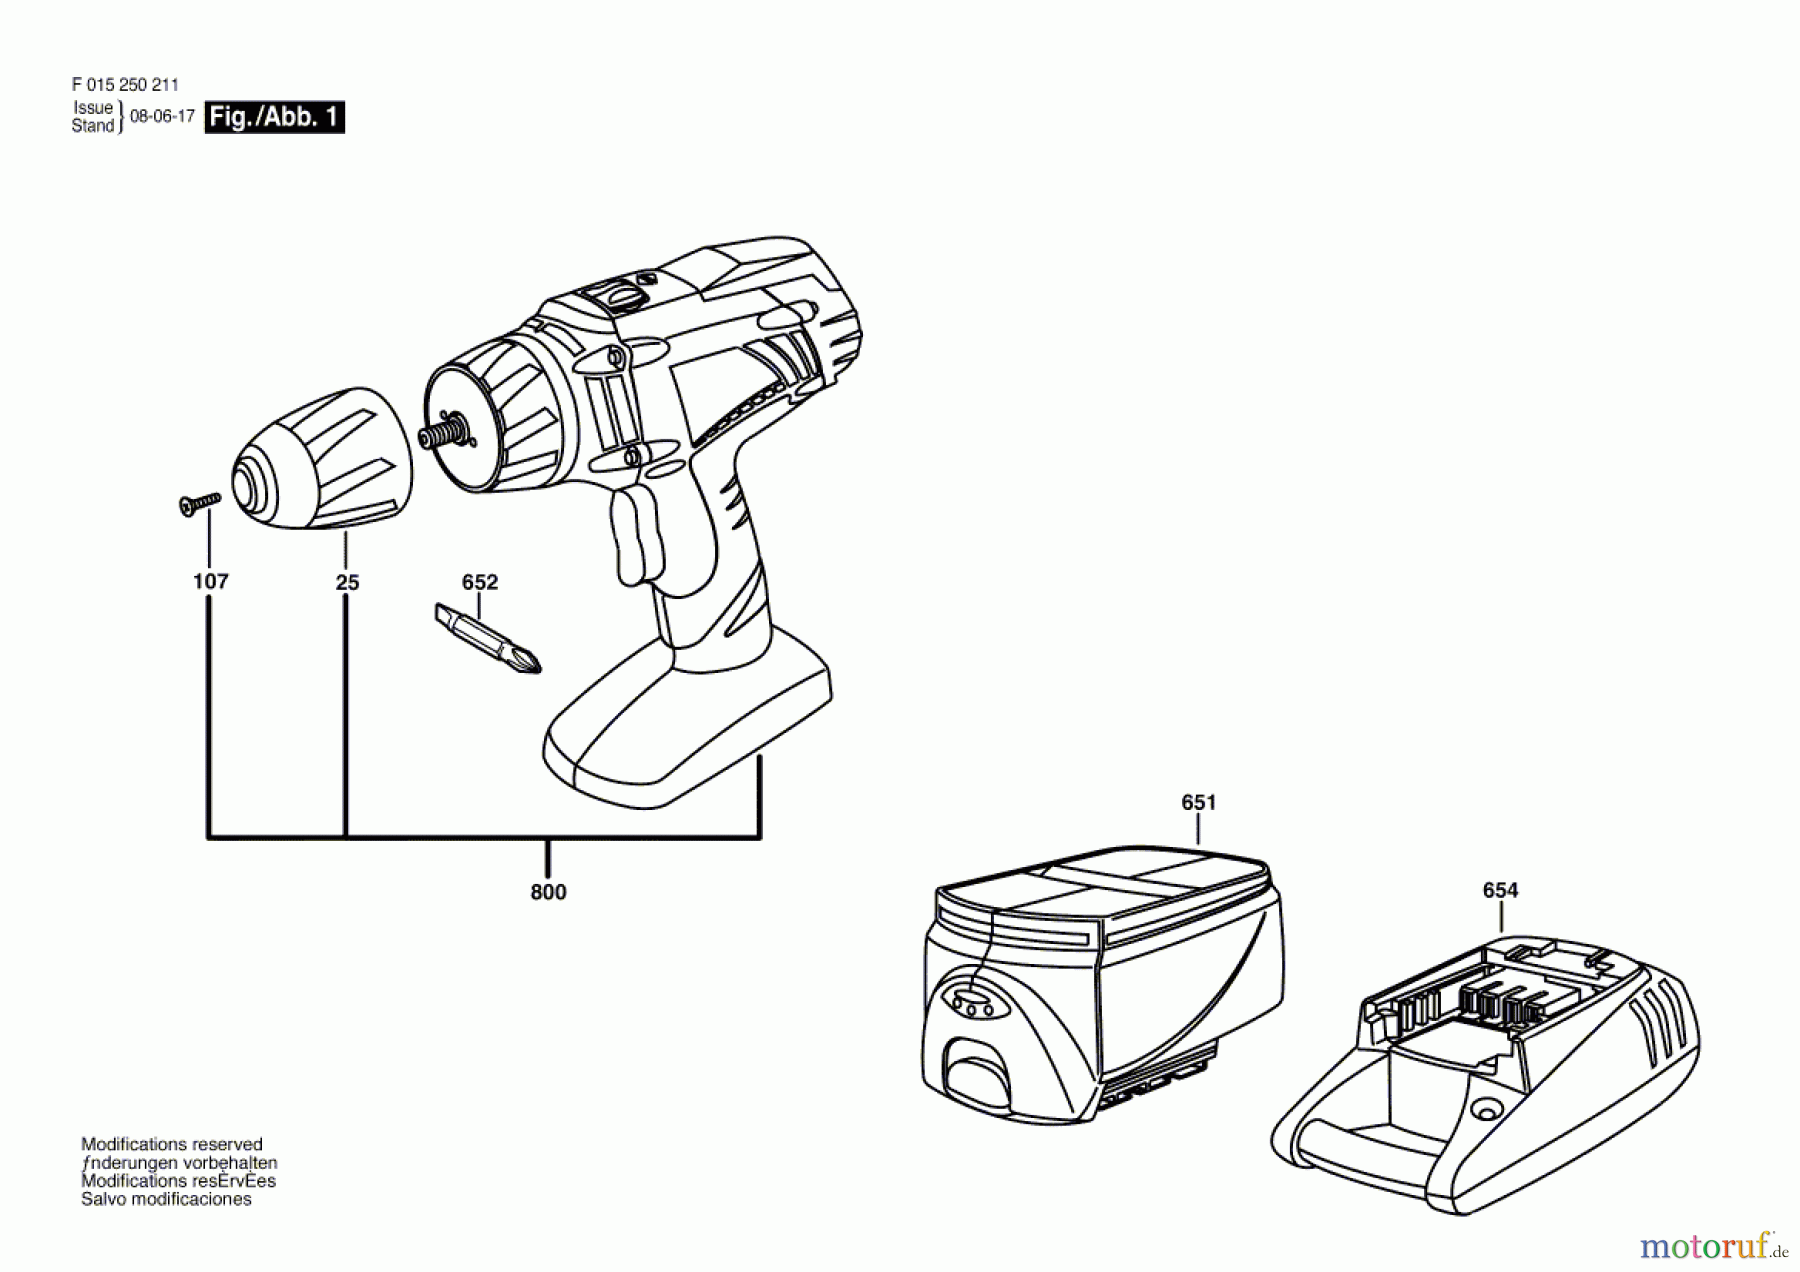  Bosch Akku Werkzeug Akku-Bohrschrauber 2702 Seite 1